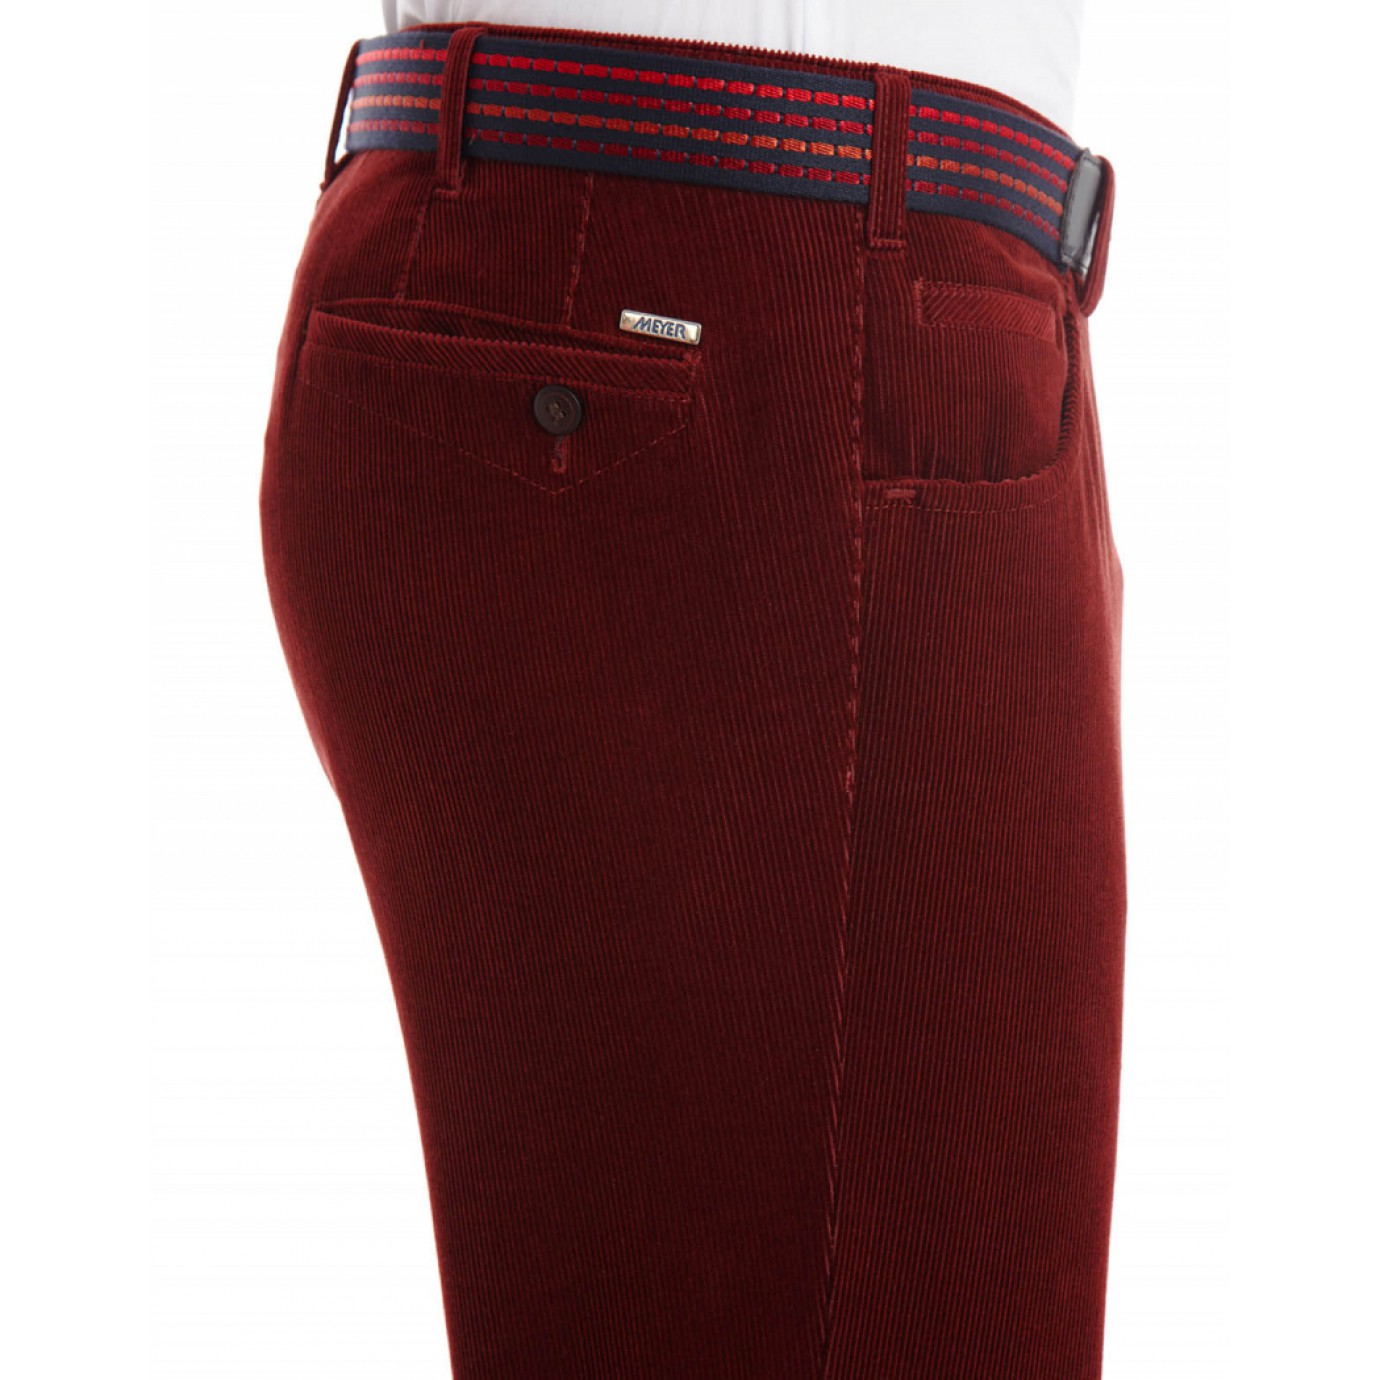 Брюки мужские Meyer Dublin 6-473/46, красного цвета, с джинсовыми карманамикупить в Москве в интернет-магазине SHOP4BIG - цена, фото, описание